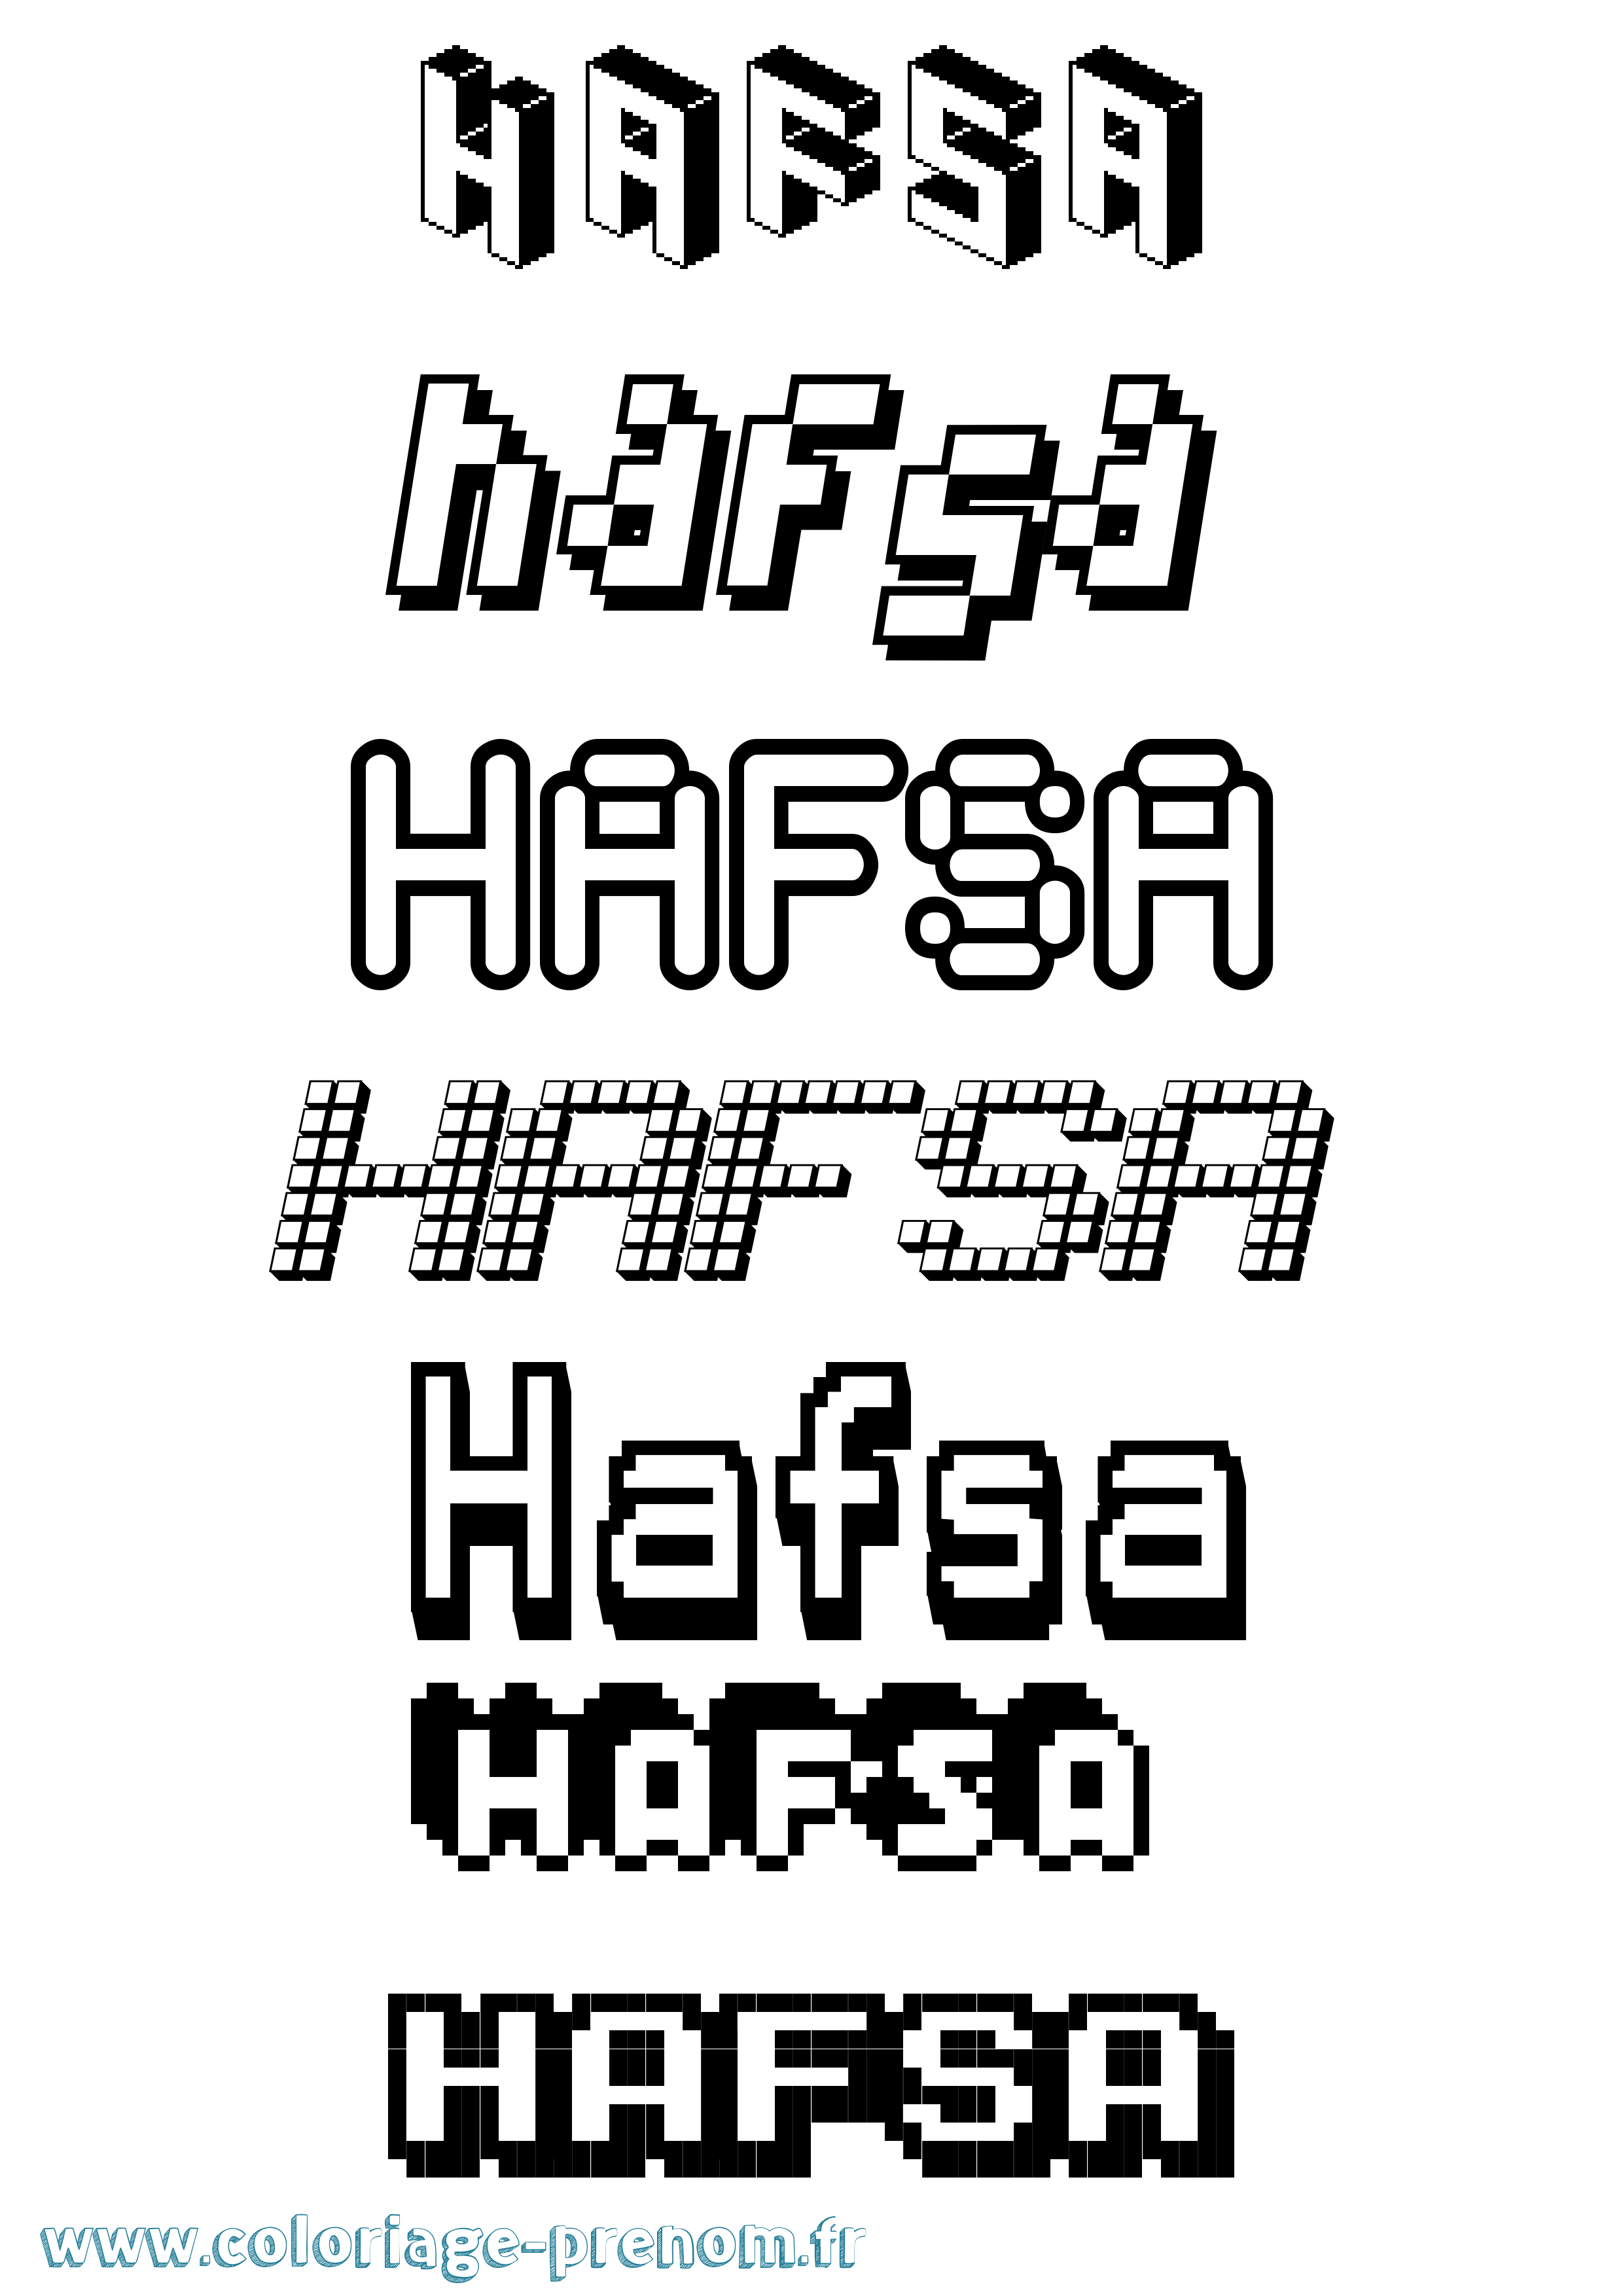 Coloriage prénom Hafsa